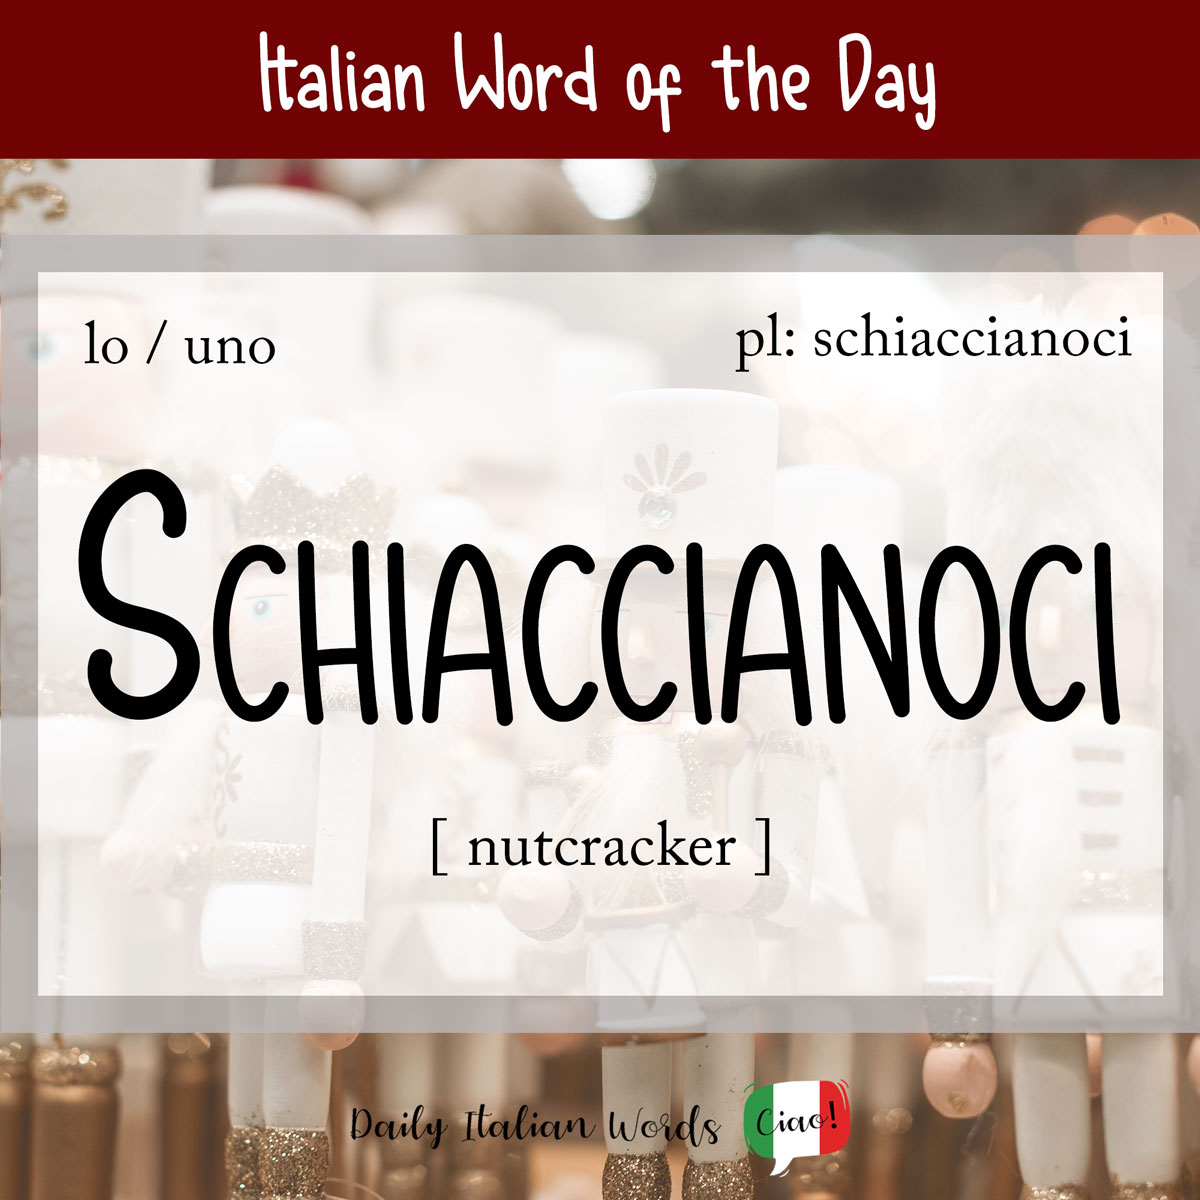 Italian Phrase of the Day: Schiaccianoci (nutcracker)